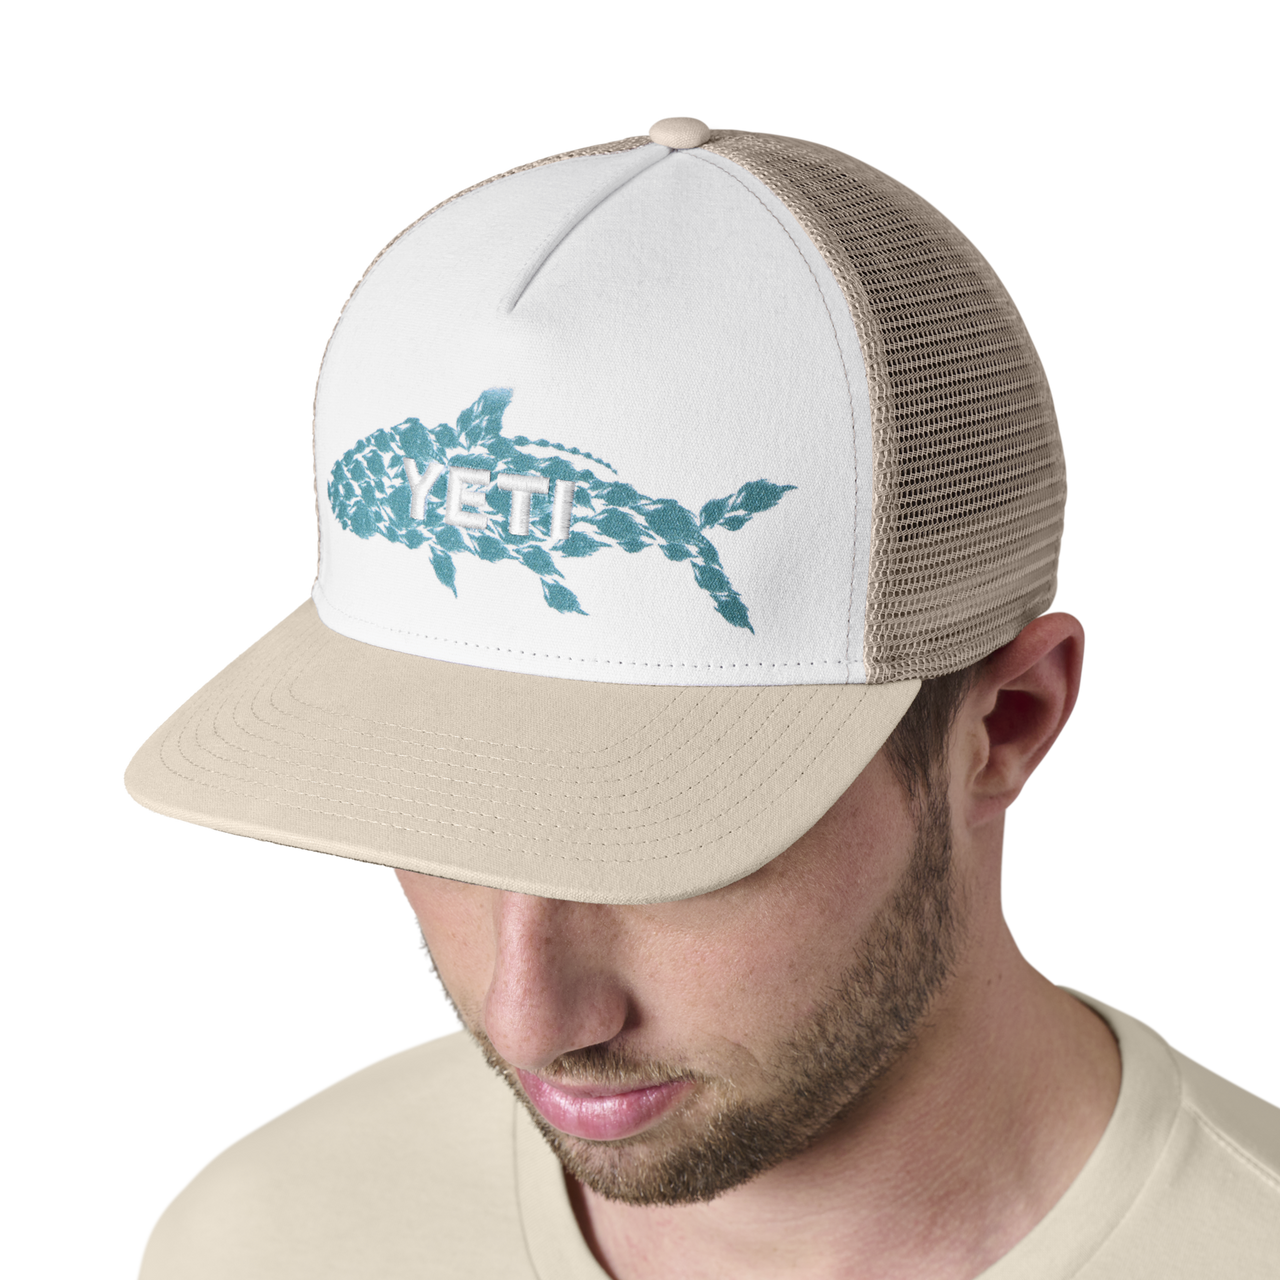 YETI Tarpon Flies Trucker Hat - Navy/White - Backcountry & Beyond